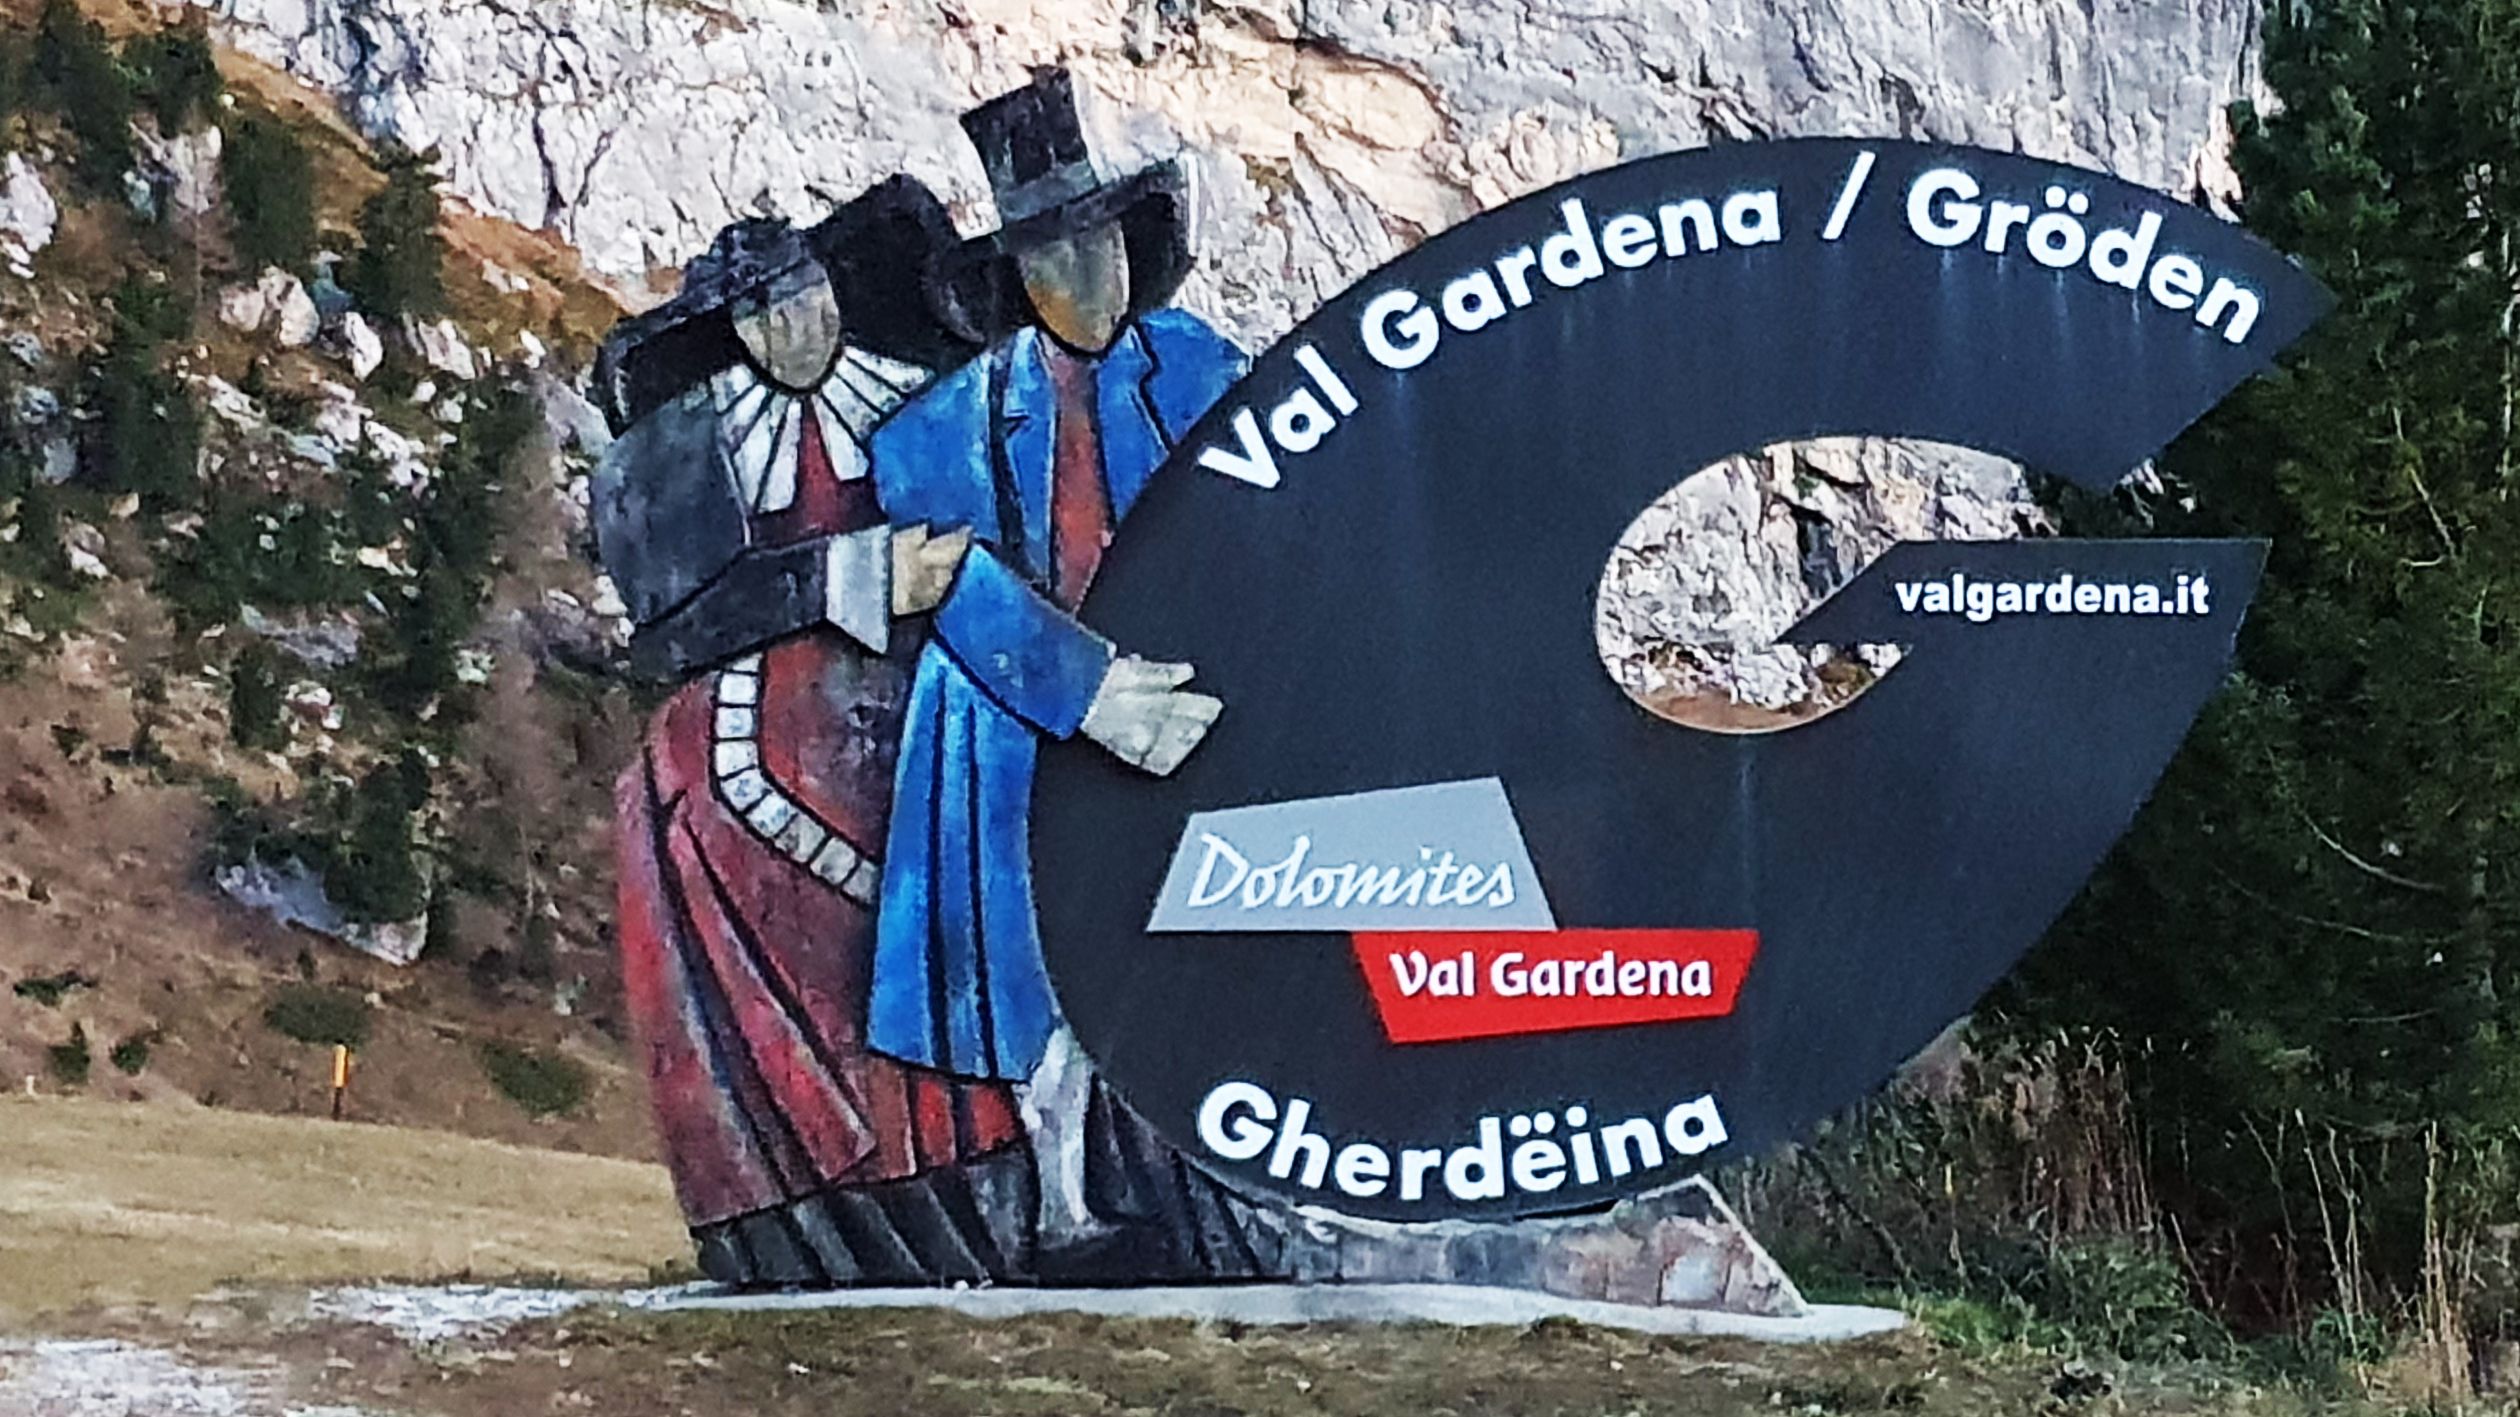 434-dag-14-Grödner-Joch-57-val-gardena.jpg - We willen de ‘burning dolomites’ zien. Het weer zit mee, dus rijden we naar Grödner Joch (Passo Gardena).